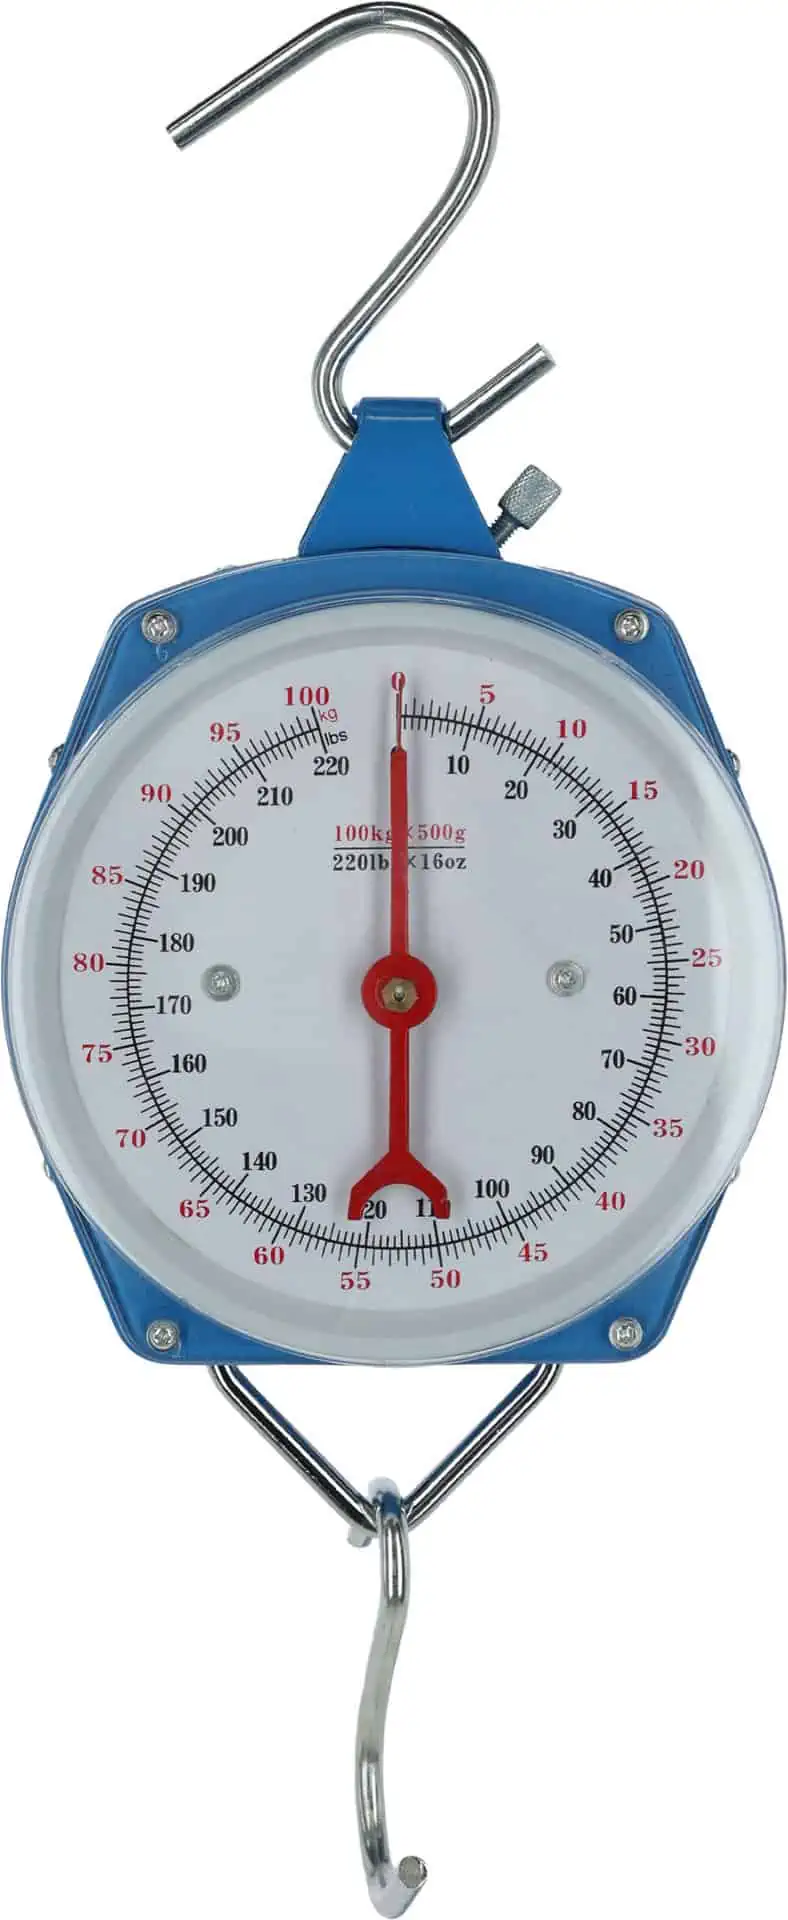 Susp. dial balance 100 kg colour blue